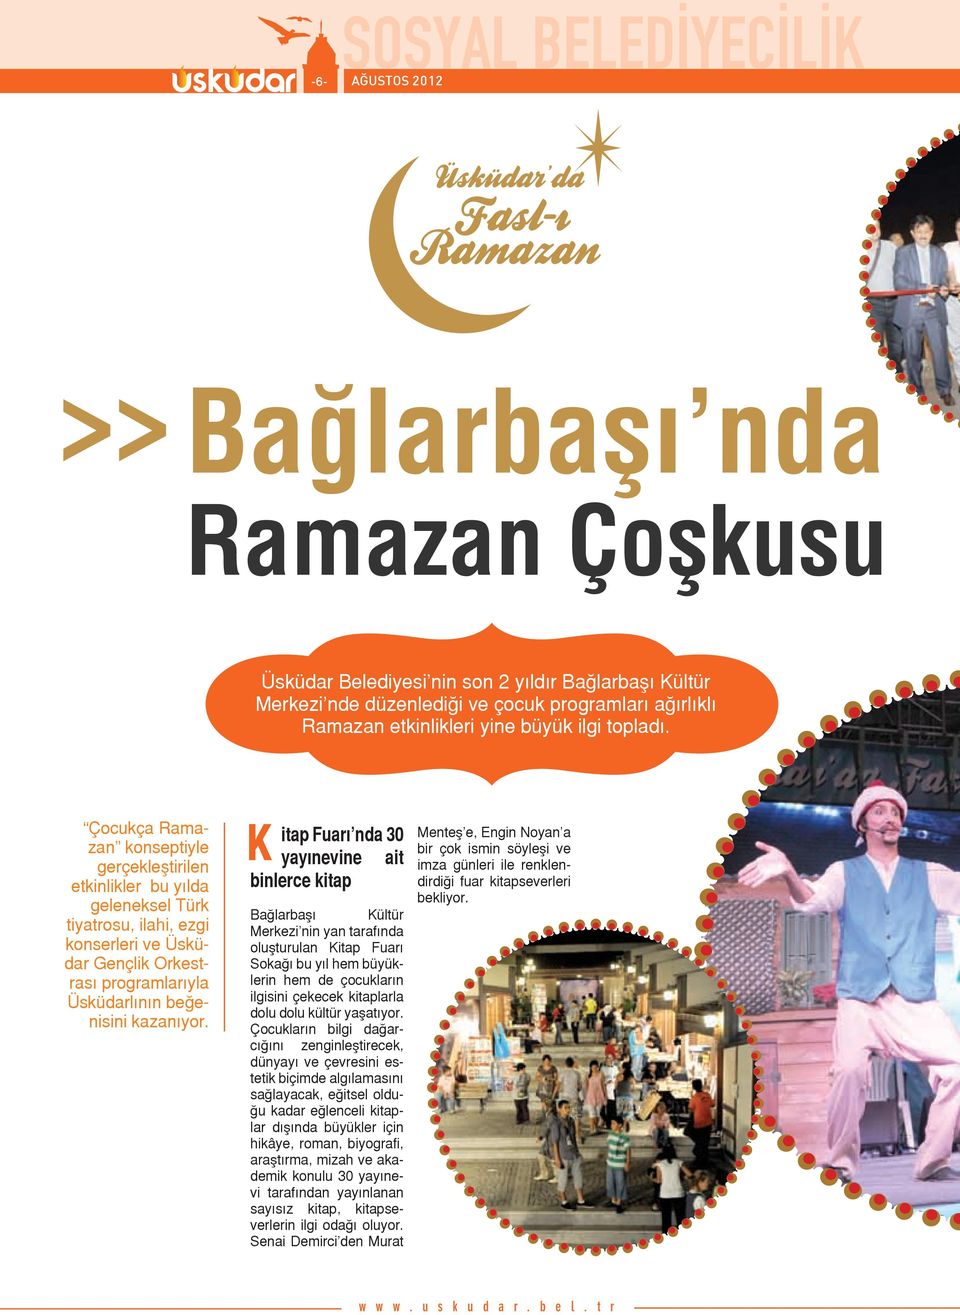 Çocukça Ramazan konseptiyle gerçekleştirilen etkinlikler bu yılda geleneksel Türk tiyatrosu, ilahi, ezgi konserleri ve Üsküdar Gençlik Orkestrası programlarıyla Üsküdarlının beğenisini kazanıyor.